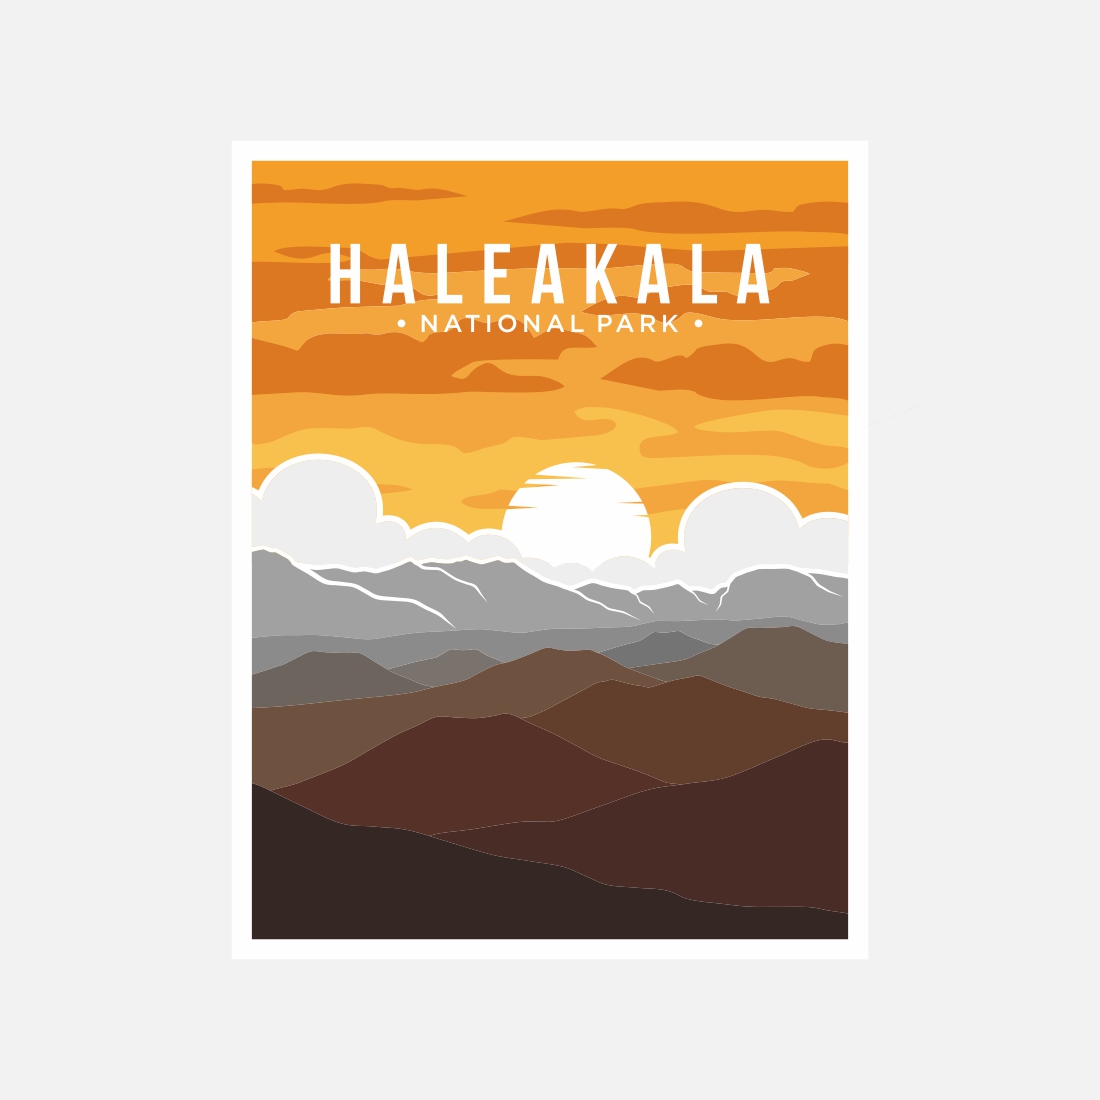 Haleakala National Park poster vector illustration design – Only $8 cover image.